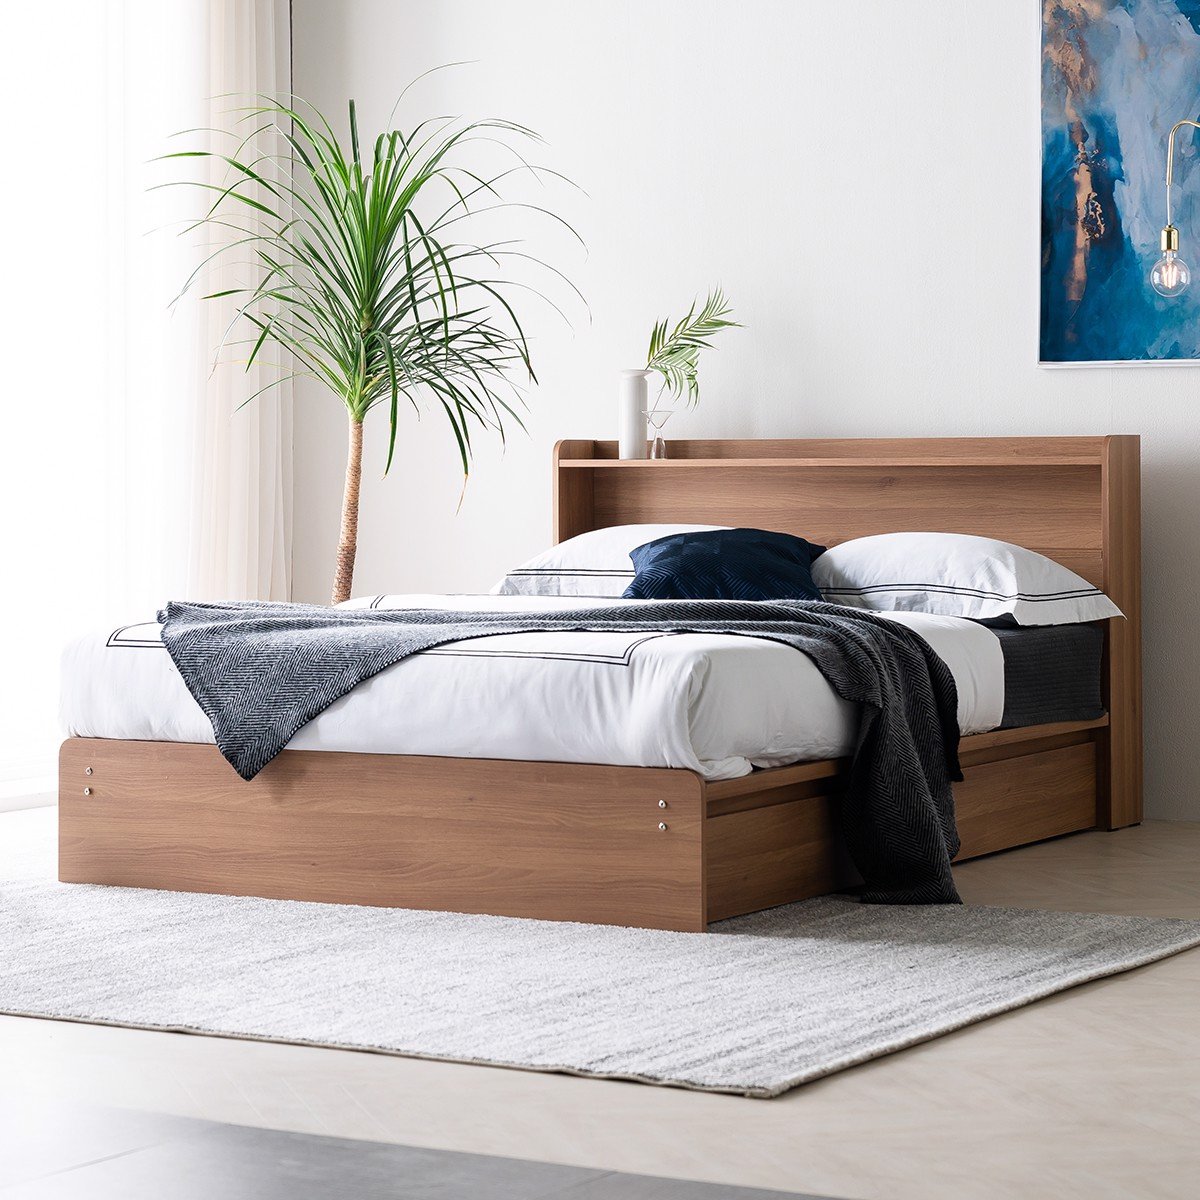 Mẫu giường ngủ gỗ sồi đẹp với khung chắc chắn